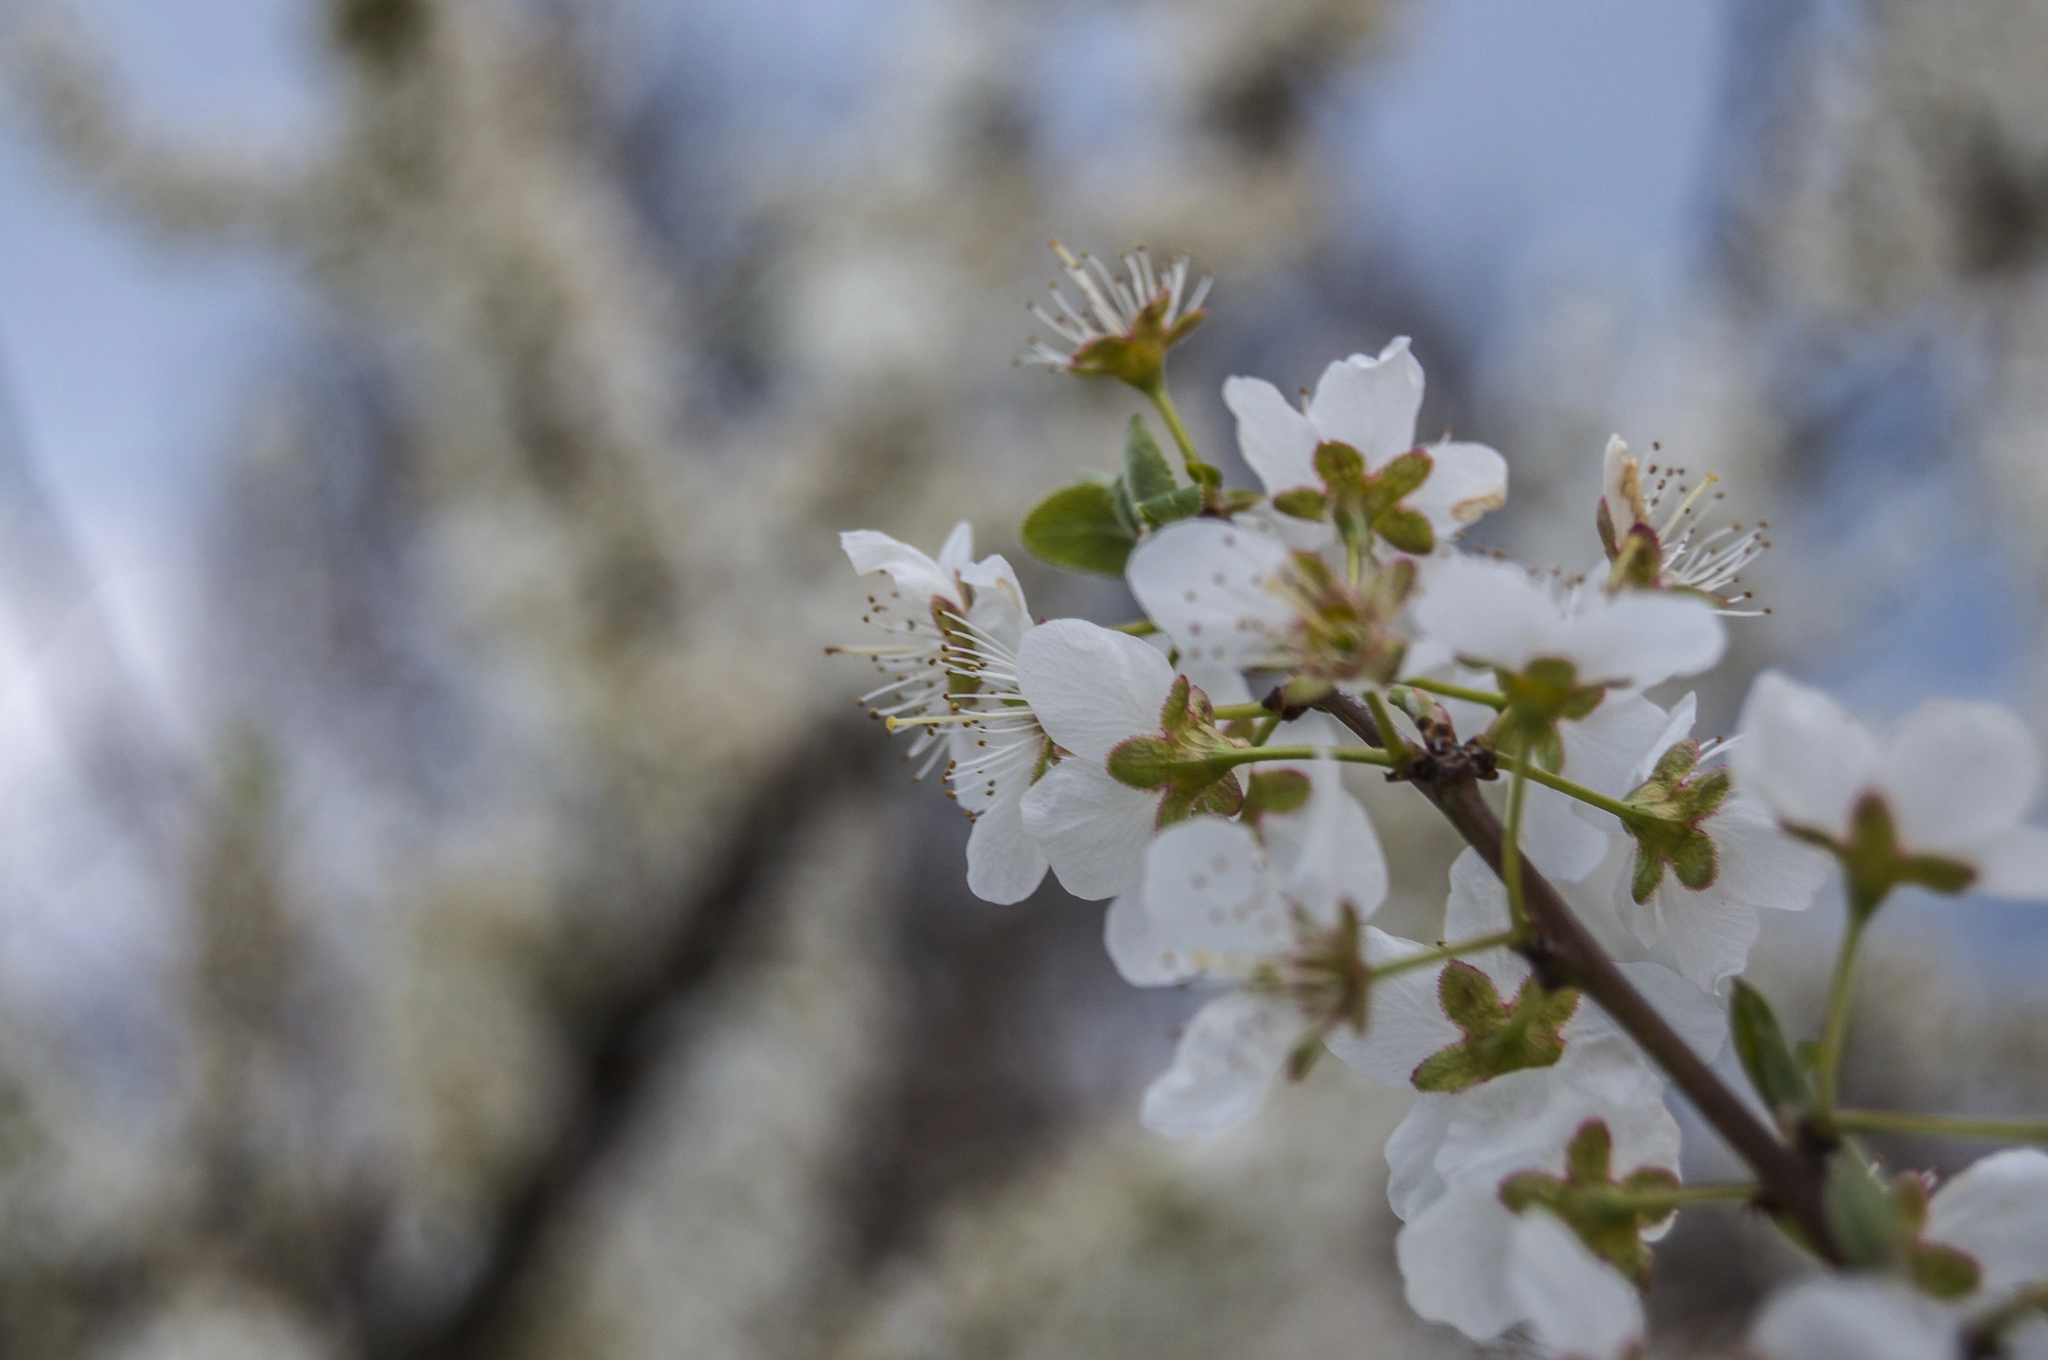 Nikon D90 + AF-S DX Zoom-Nikkor 18-55mm f/3.5-5.6G ED sample photo. Plum blossoms spring photography